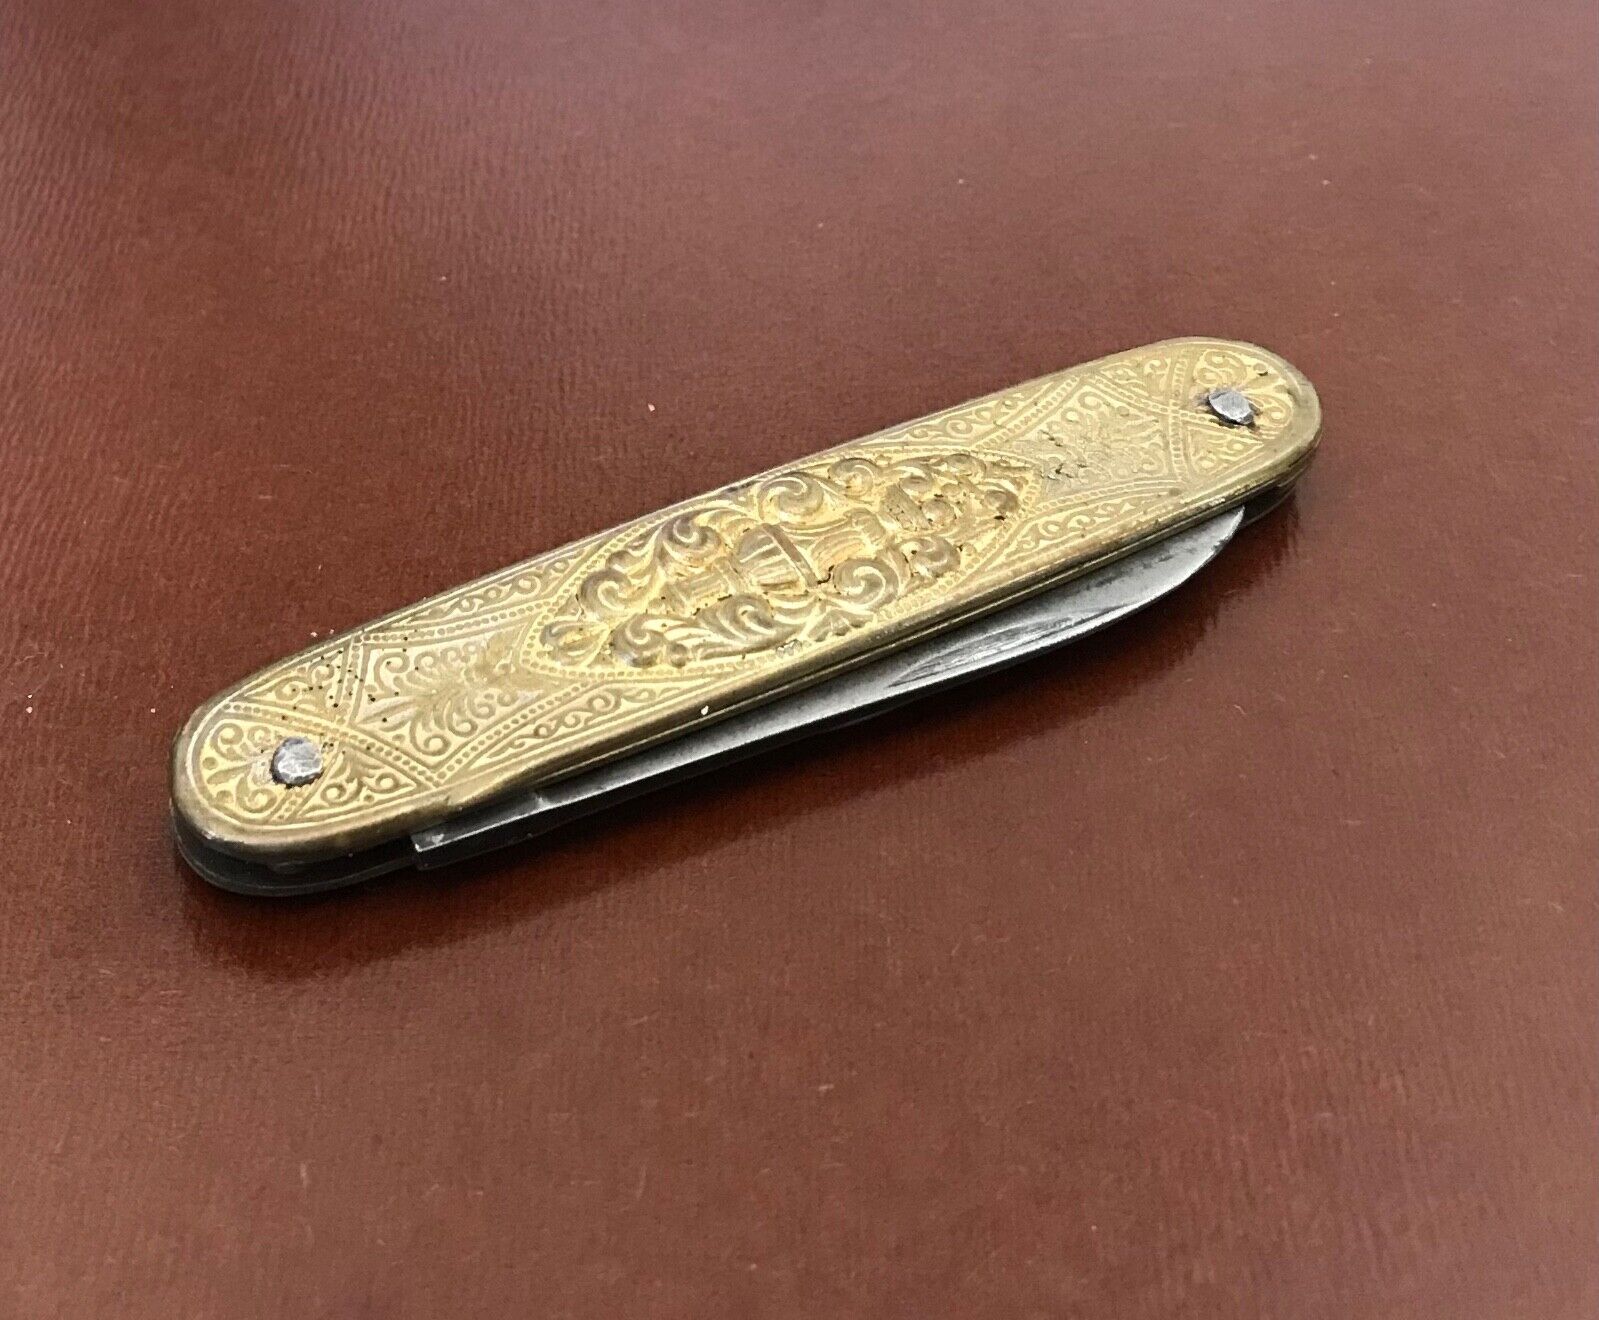 Antique Victorian Pocket Knife..2 blades